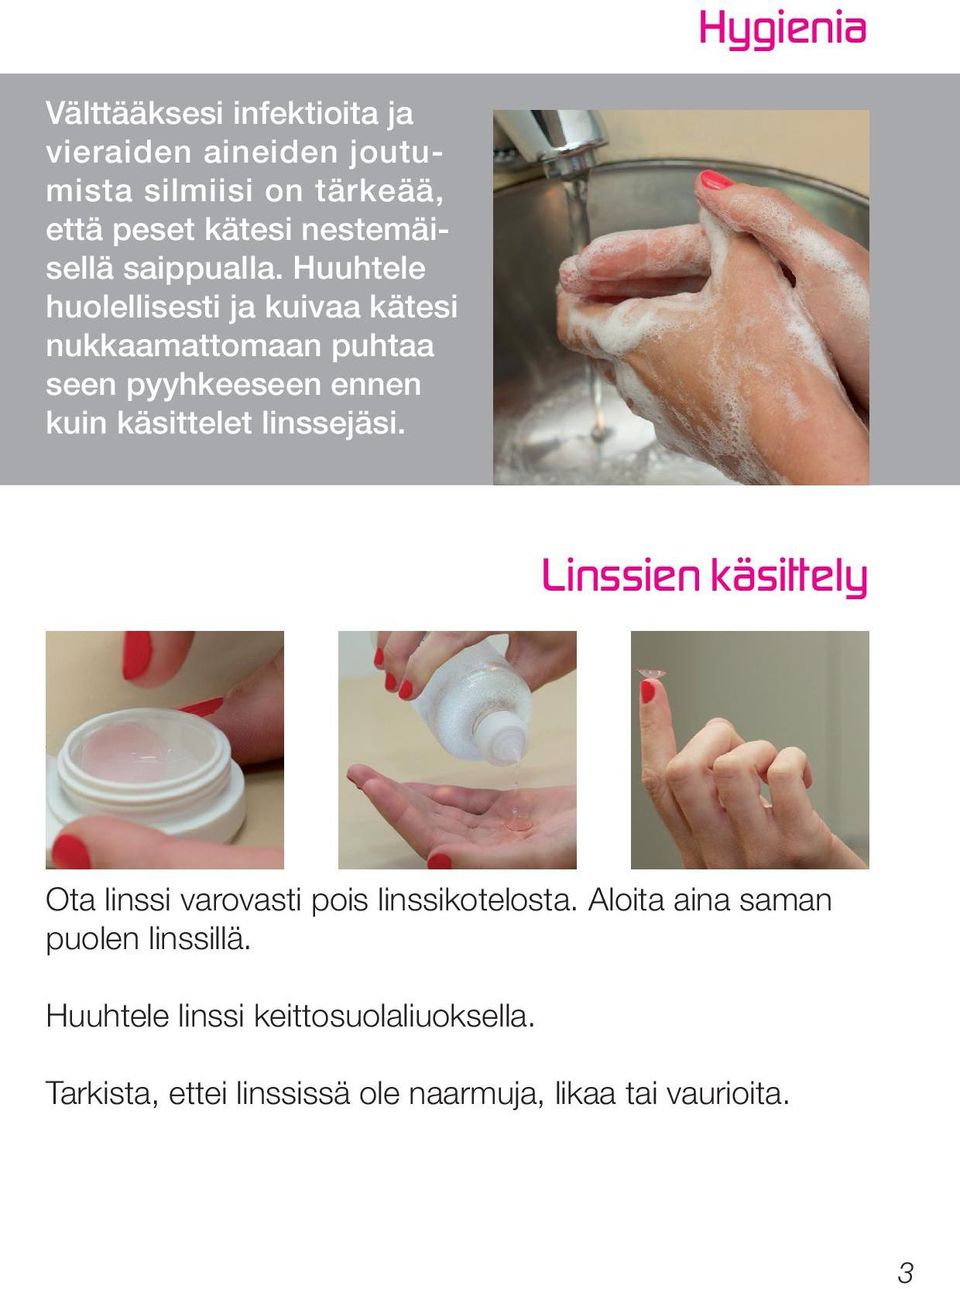 Huuhtele huolellisesti ja kuivaa kätesi nukkaamattomaan puhtaa seen pyyhkeeseen ennen kuin käsittelet